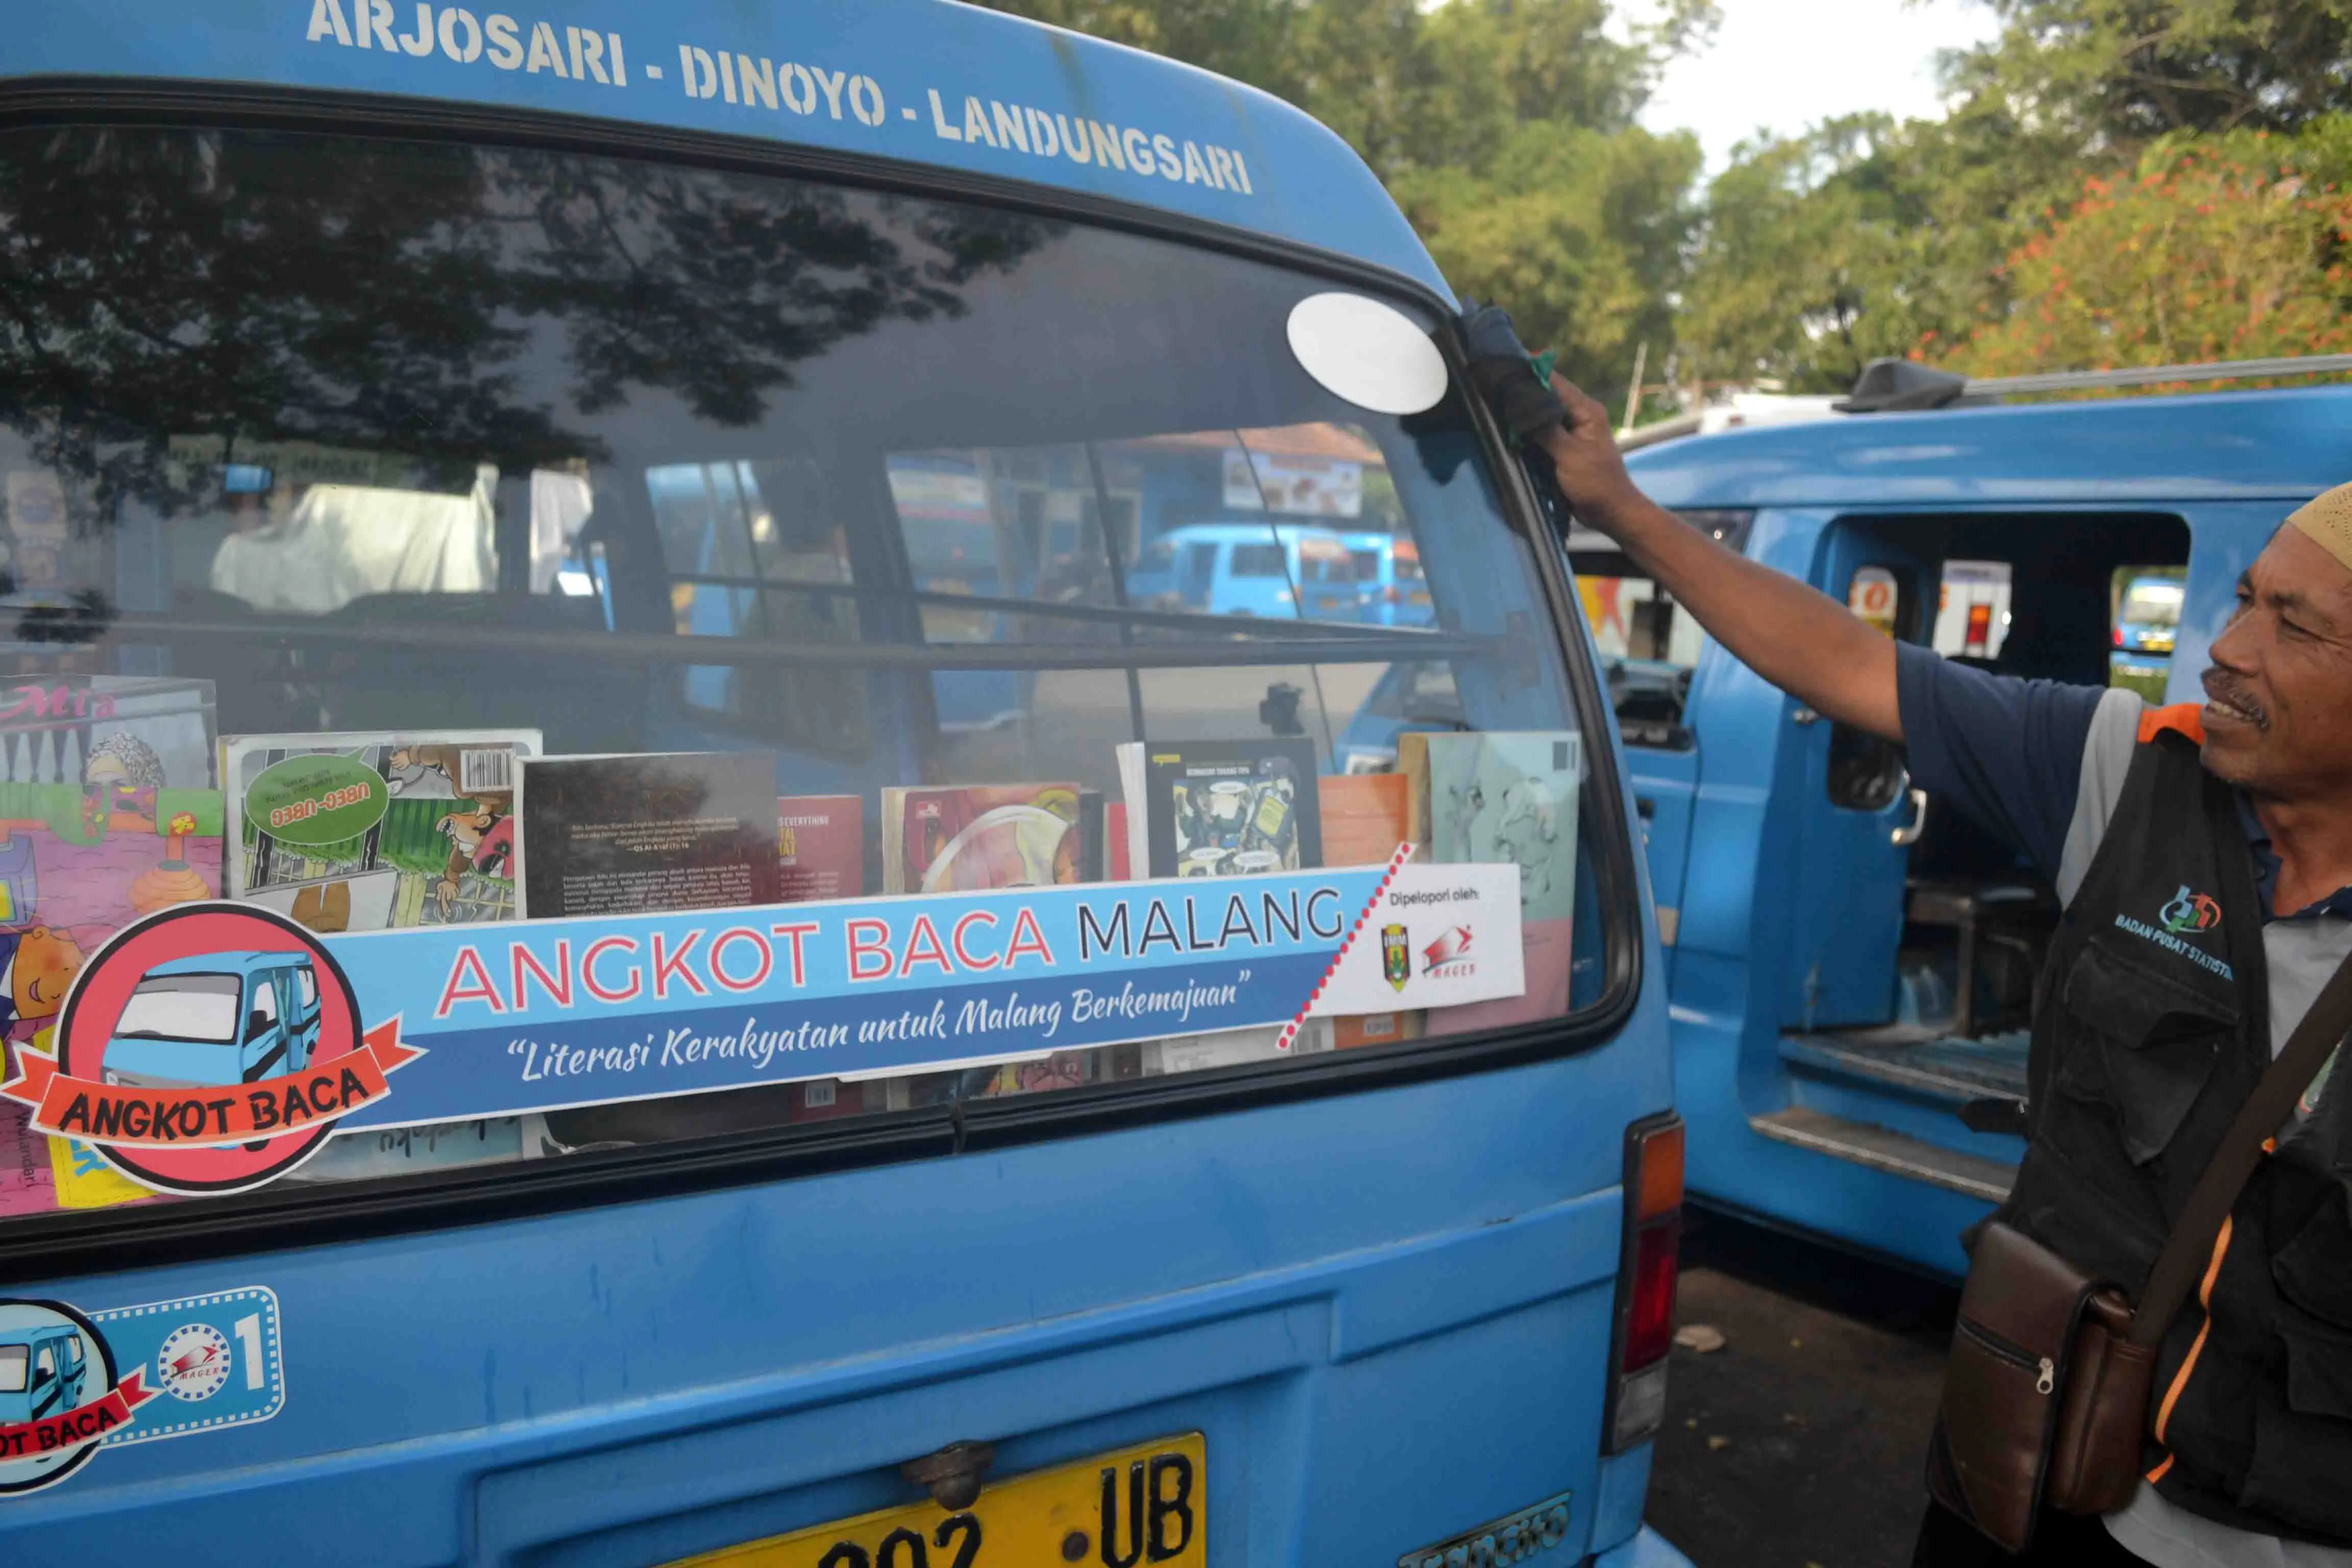 Angkot baca di Malang, Jawa Timur, dilengkapi buku memiliki nilai tambah disukai penumpang dan ikut membudayakan membaca (Zainul Arifin/Liputan6.com)